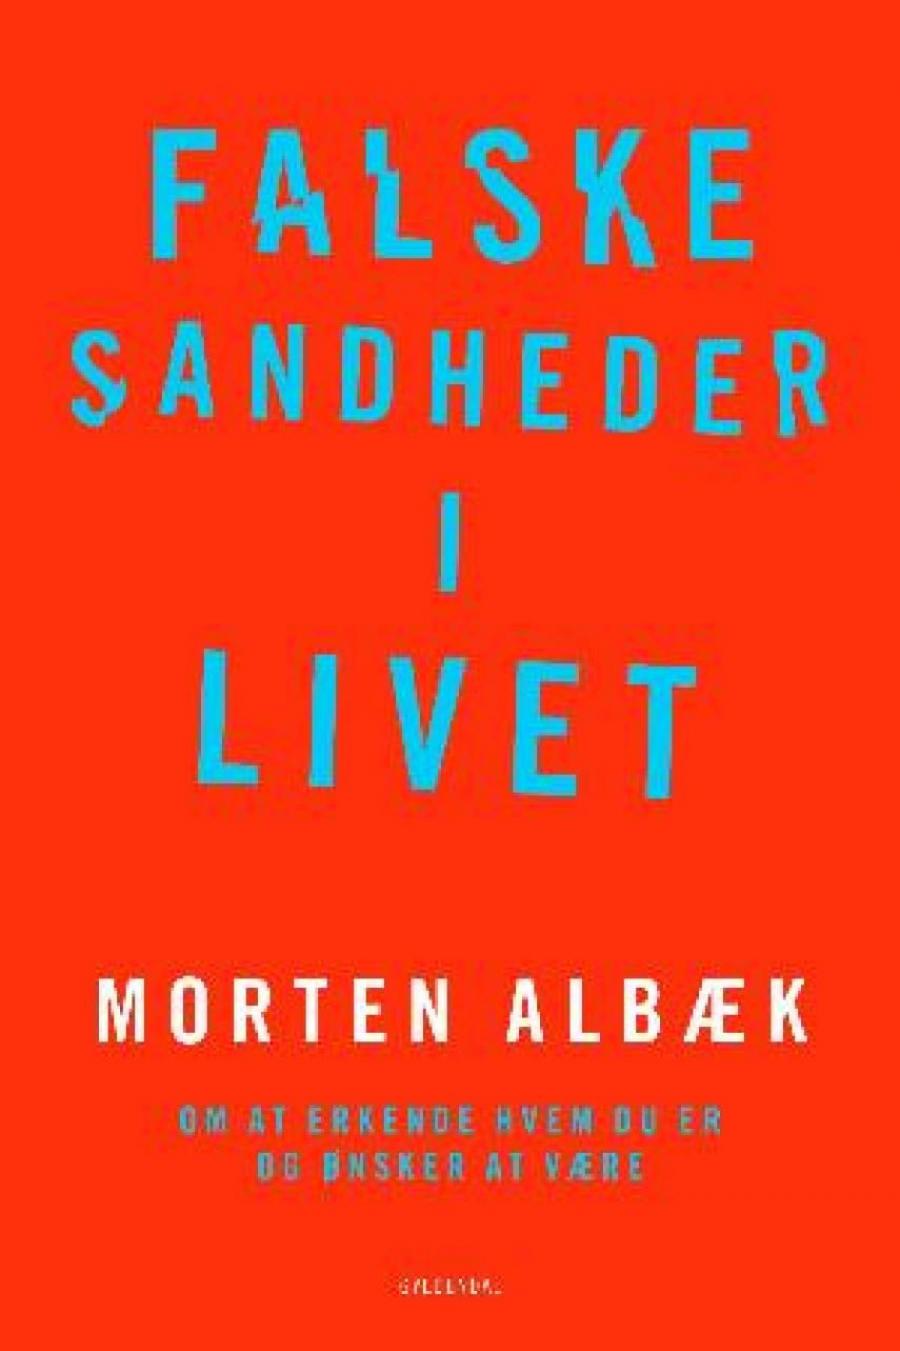 Falske sandheder i livet af Morten Albæk